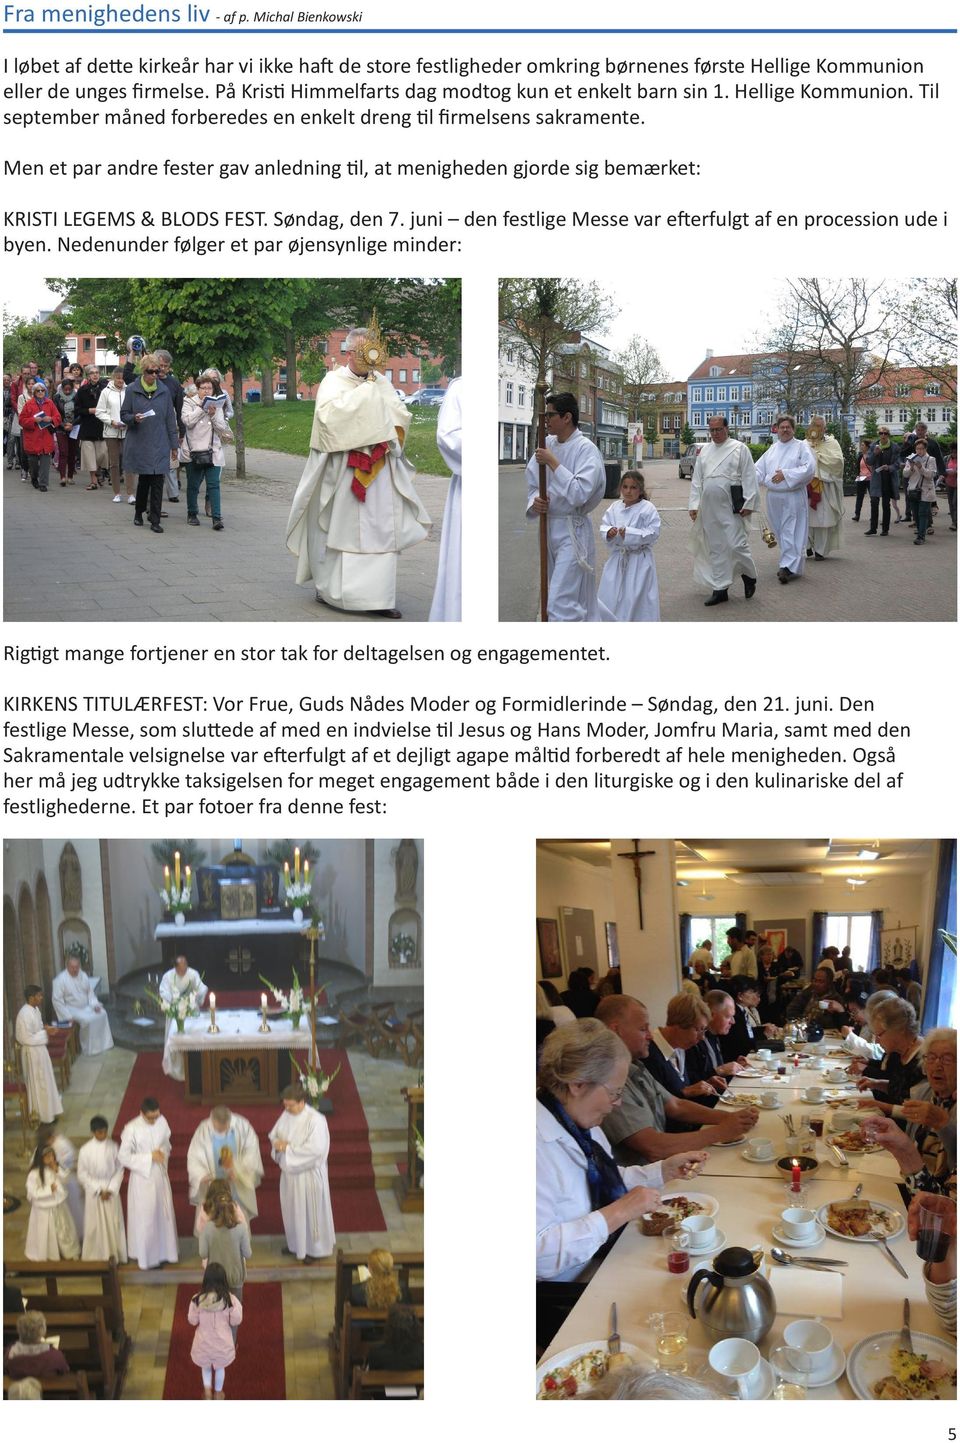 Men et par andre fester gav anledning til, at menigheden gjorde sig bemærket: KRISTI LEGEMS & BLODS FEST. Søndag, den 7. juni den festlige Messe var efterfulgt af en procession ude i byen.